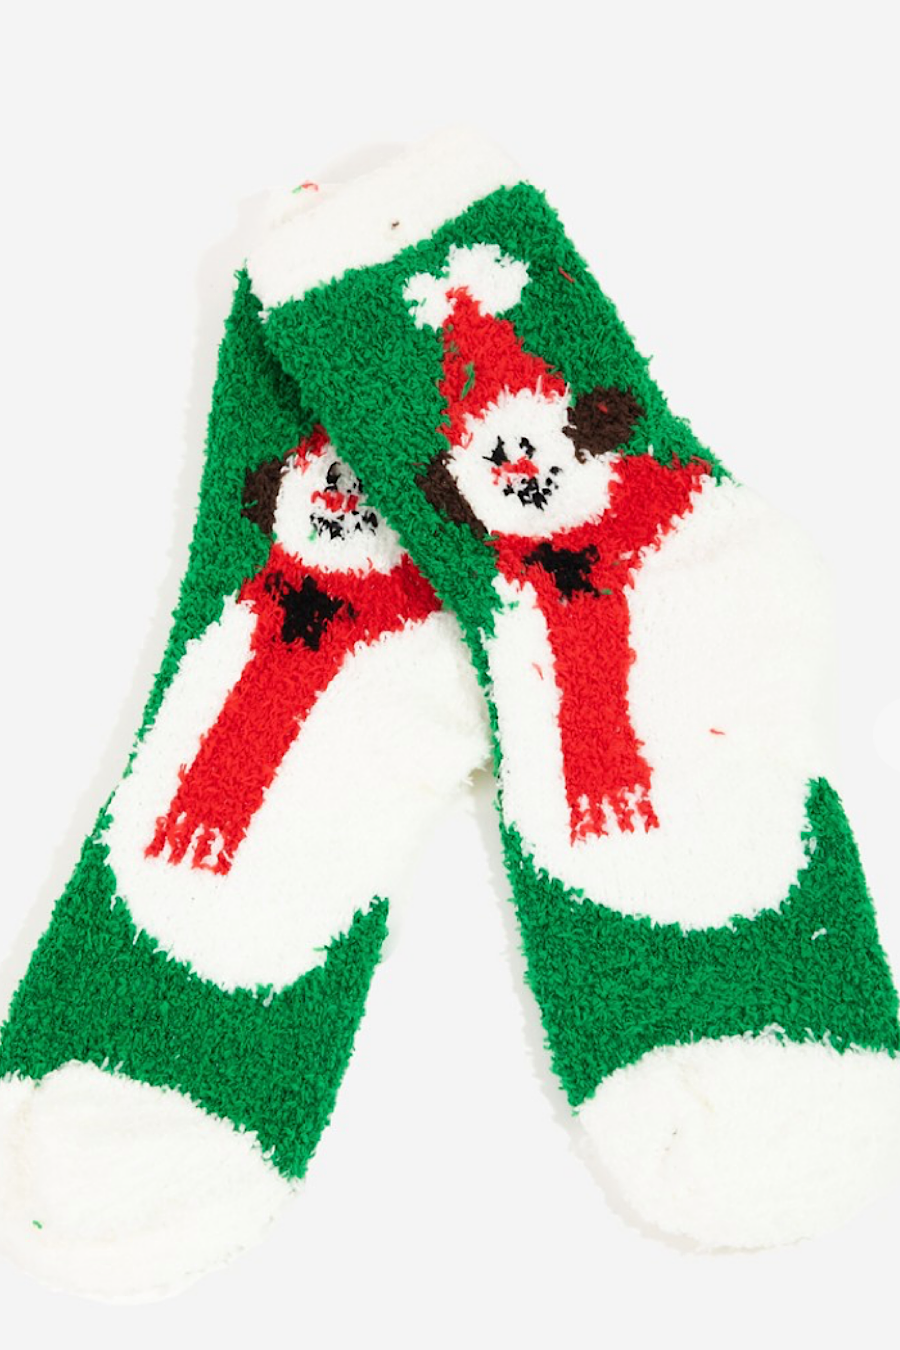 Fuzzy Snowman Socks